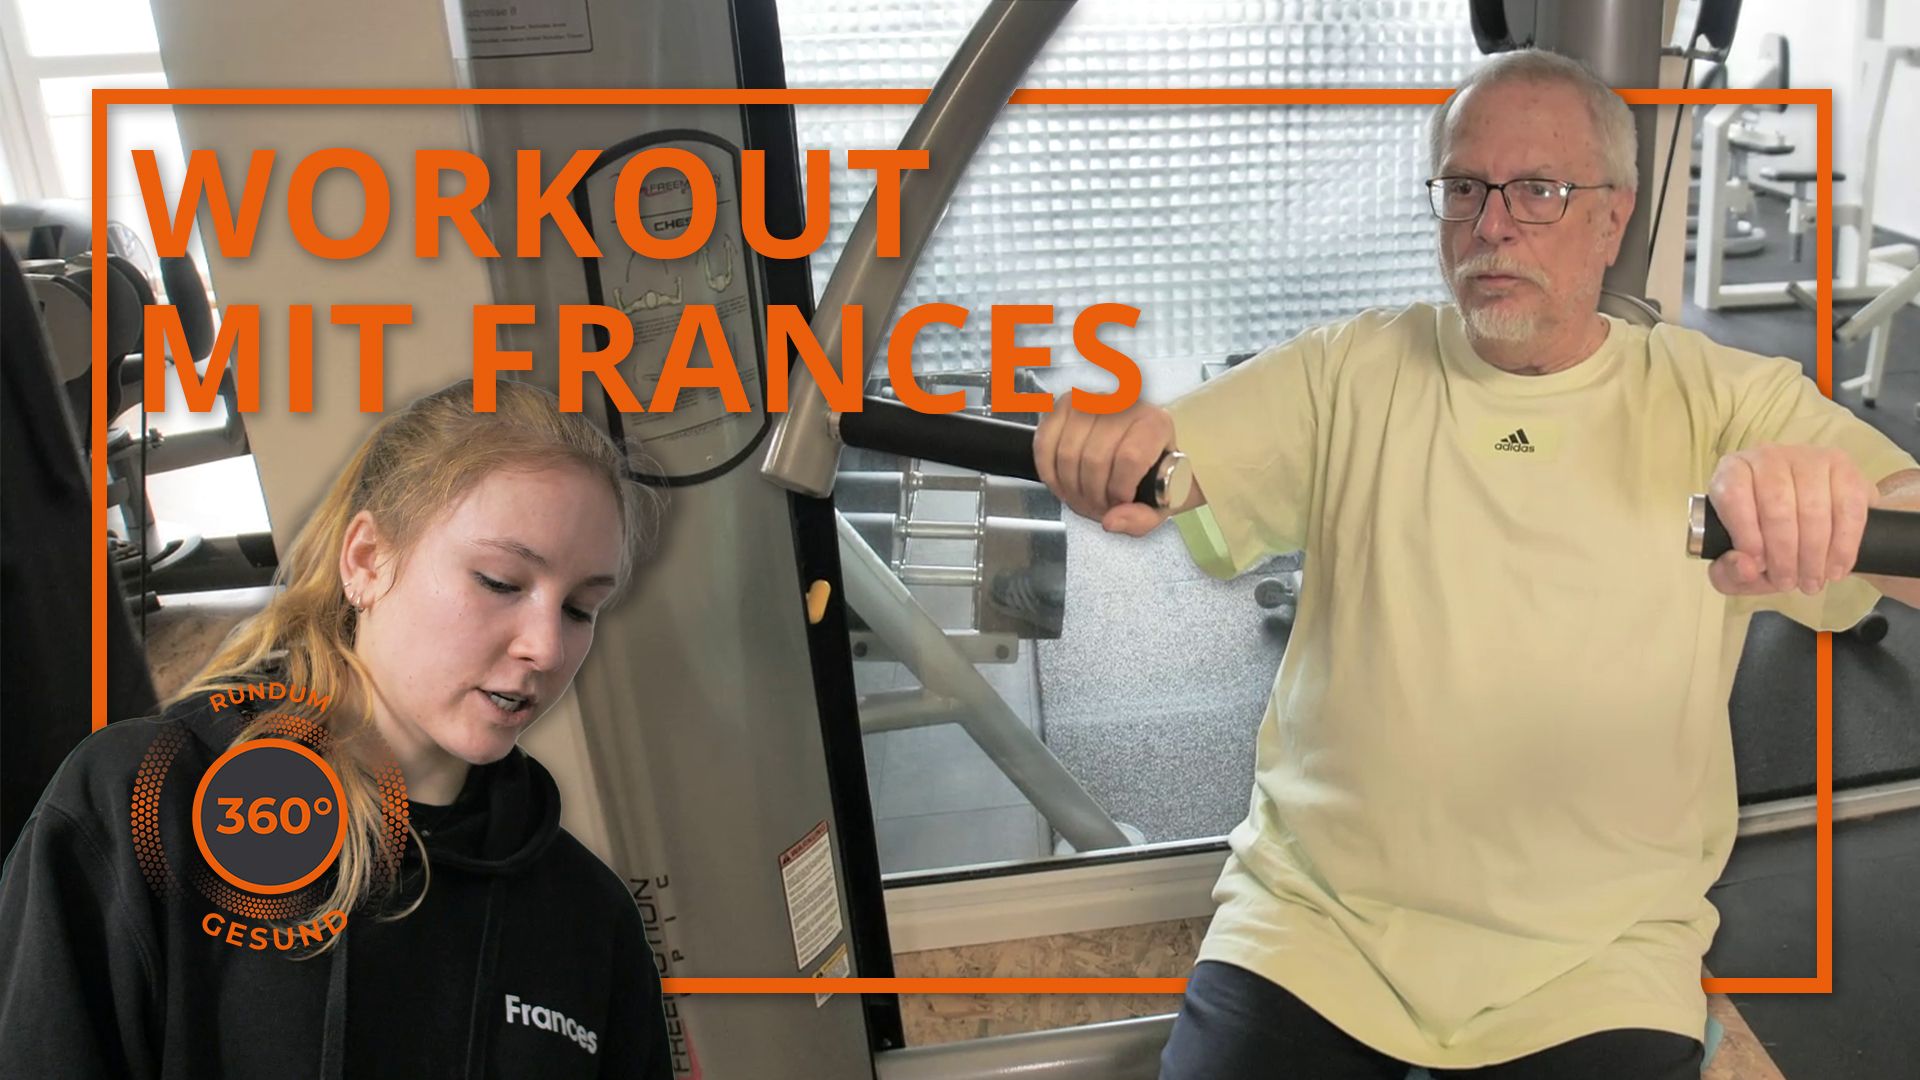 360° - Rundum gesund: Workout mit Frances (Folge 6)